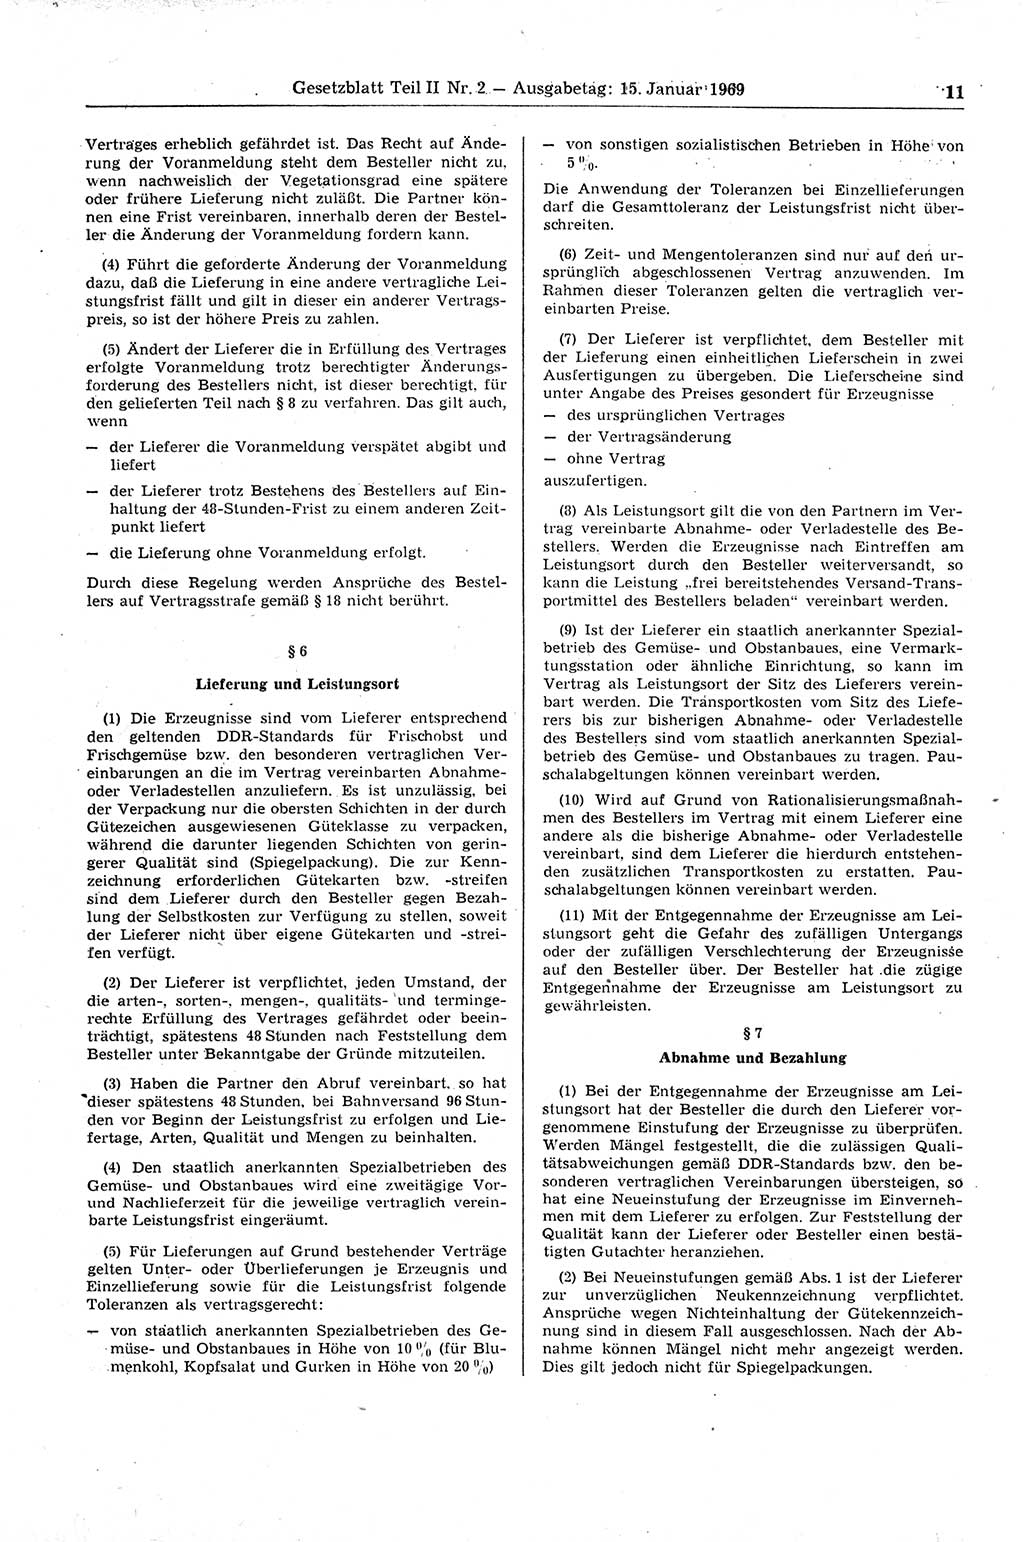 Gesetzblatt (GBl.) der Deutschen Demokratischen Republik (DDR) Teil ⅠⅠ 1969, Seite 11 (GBl. DDR ⅠⅠ 1969, S. 11)